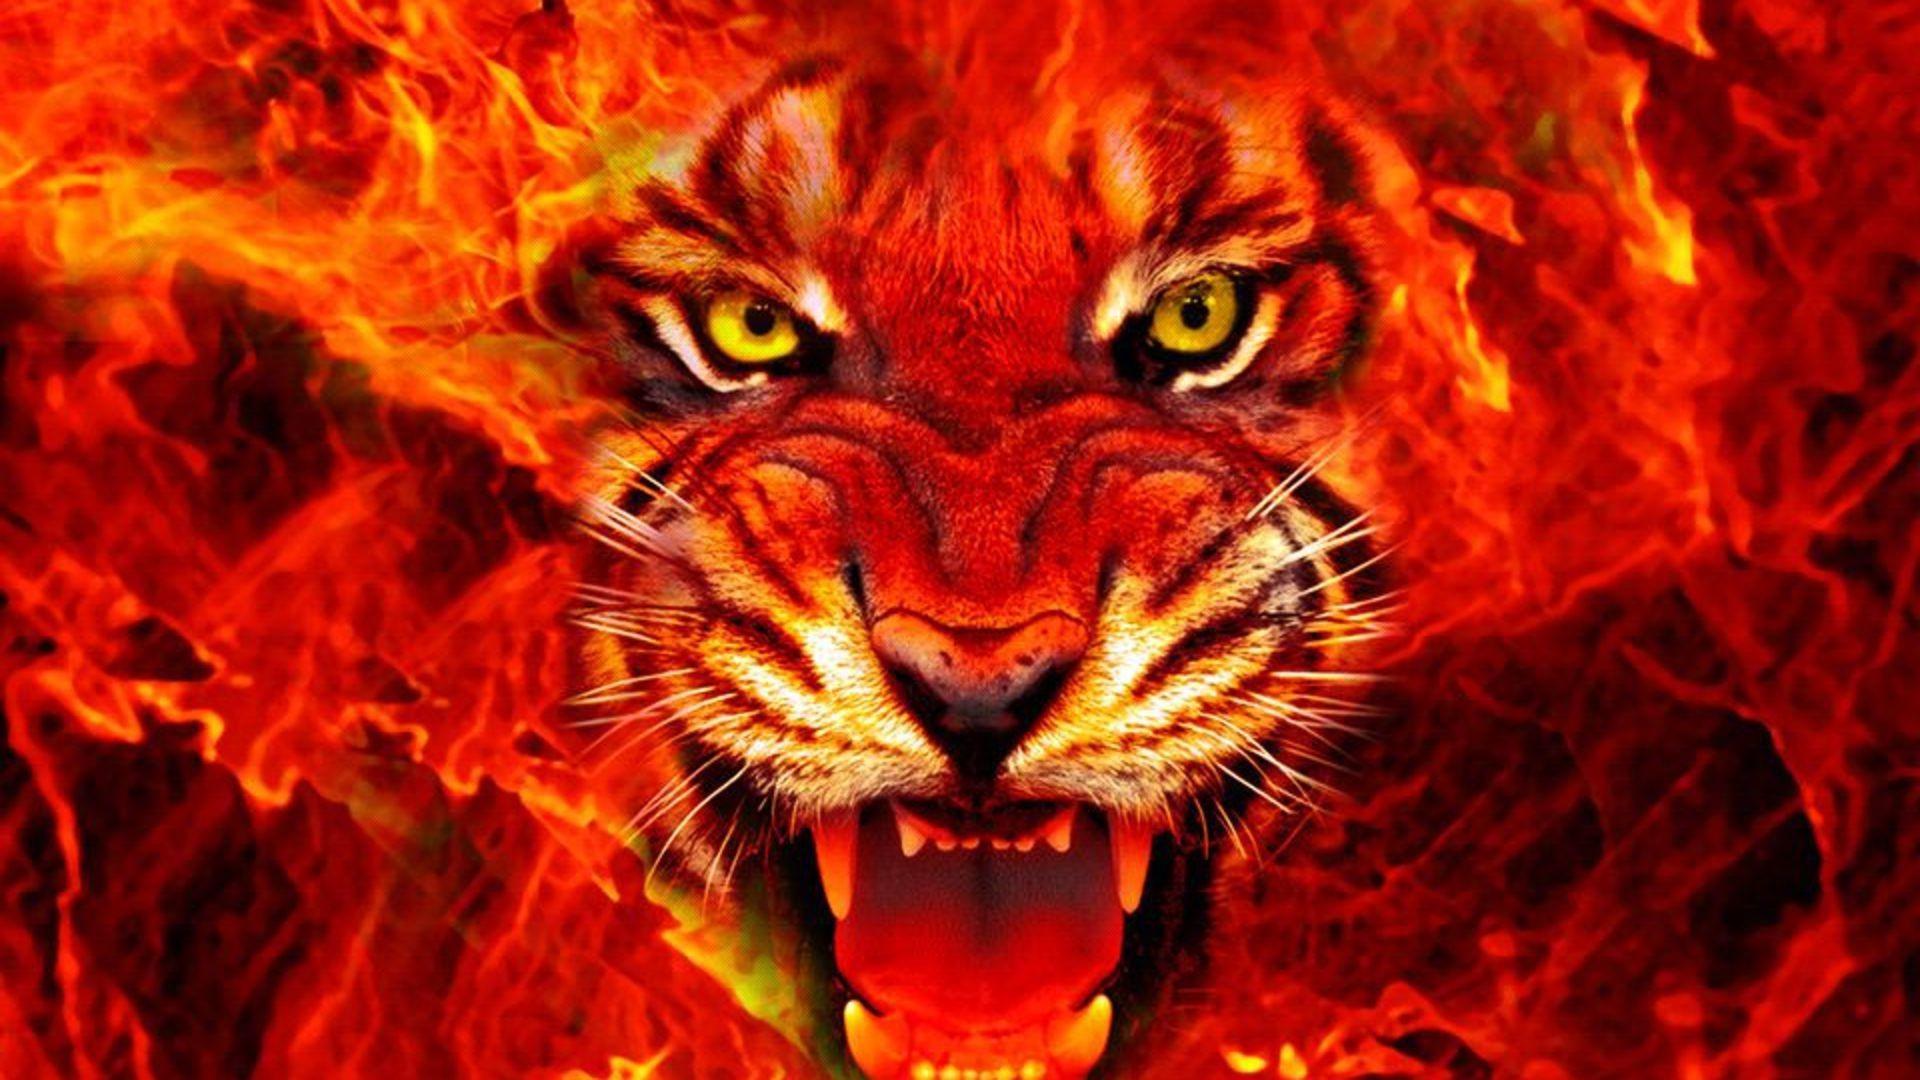 King of forest (Lion) burning face desktop. HD Wallpaper Rocks